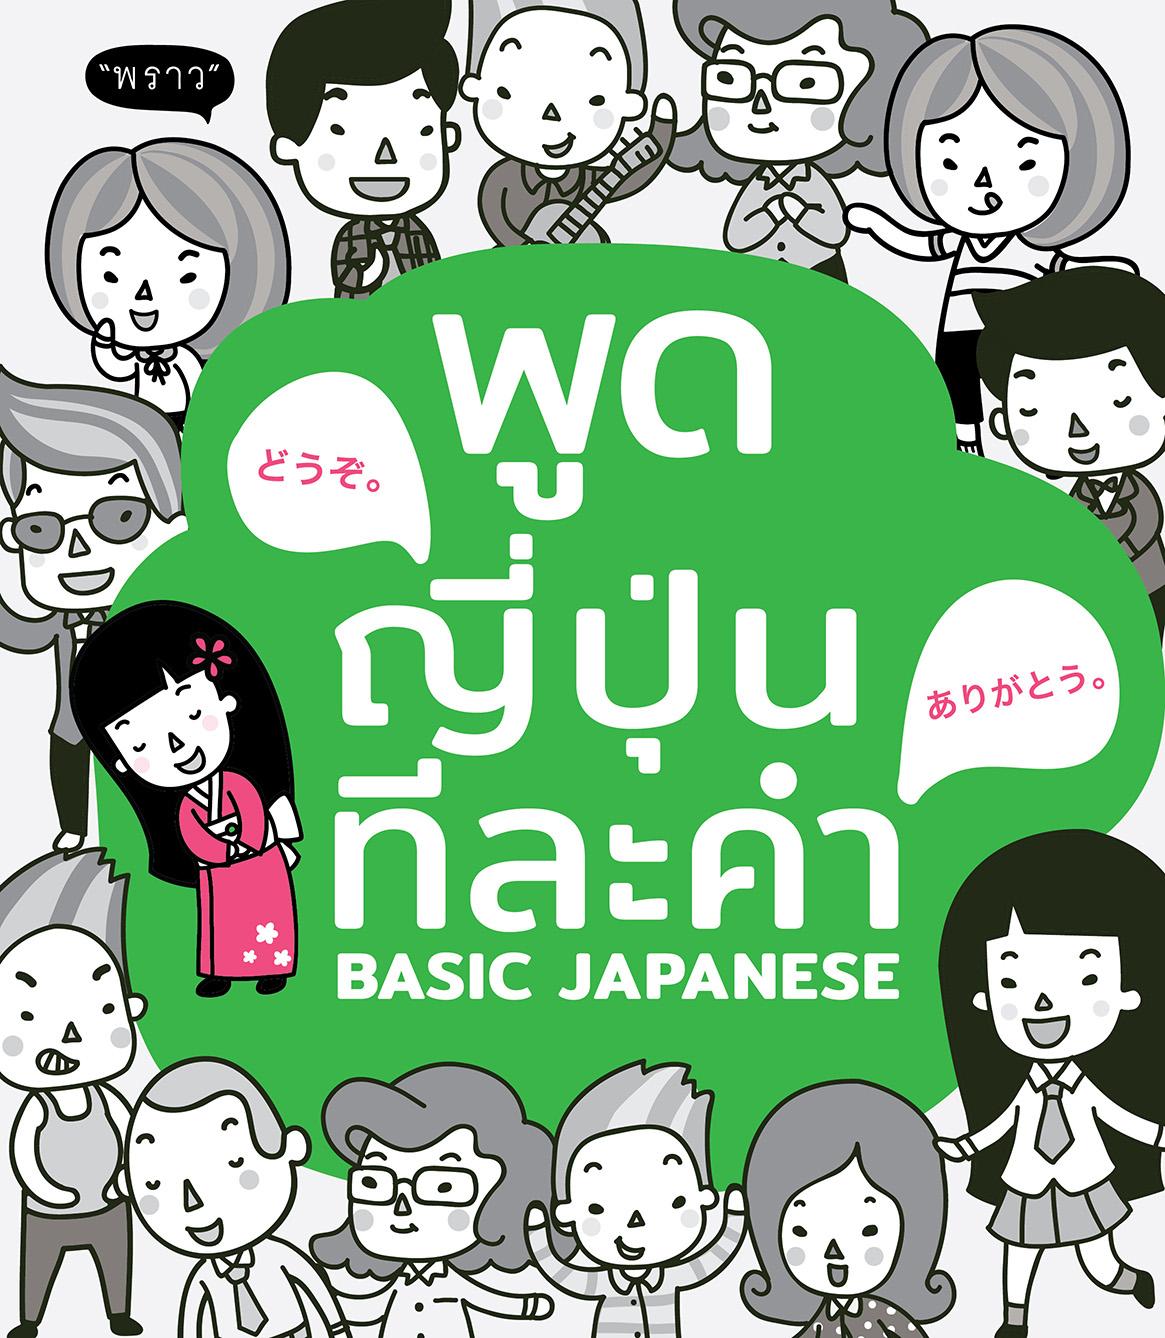 พูดญี่ปุ่น ทีละคำ Basic Japanese 